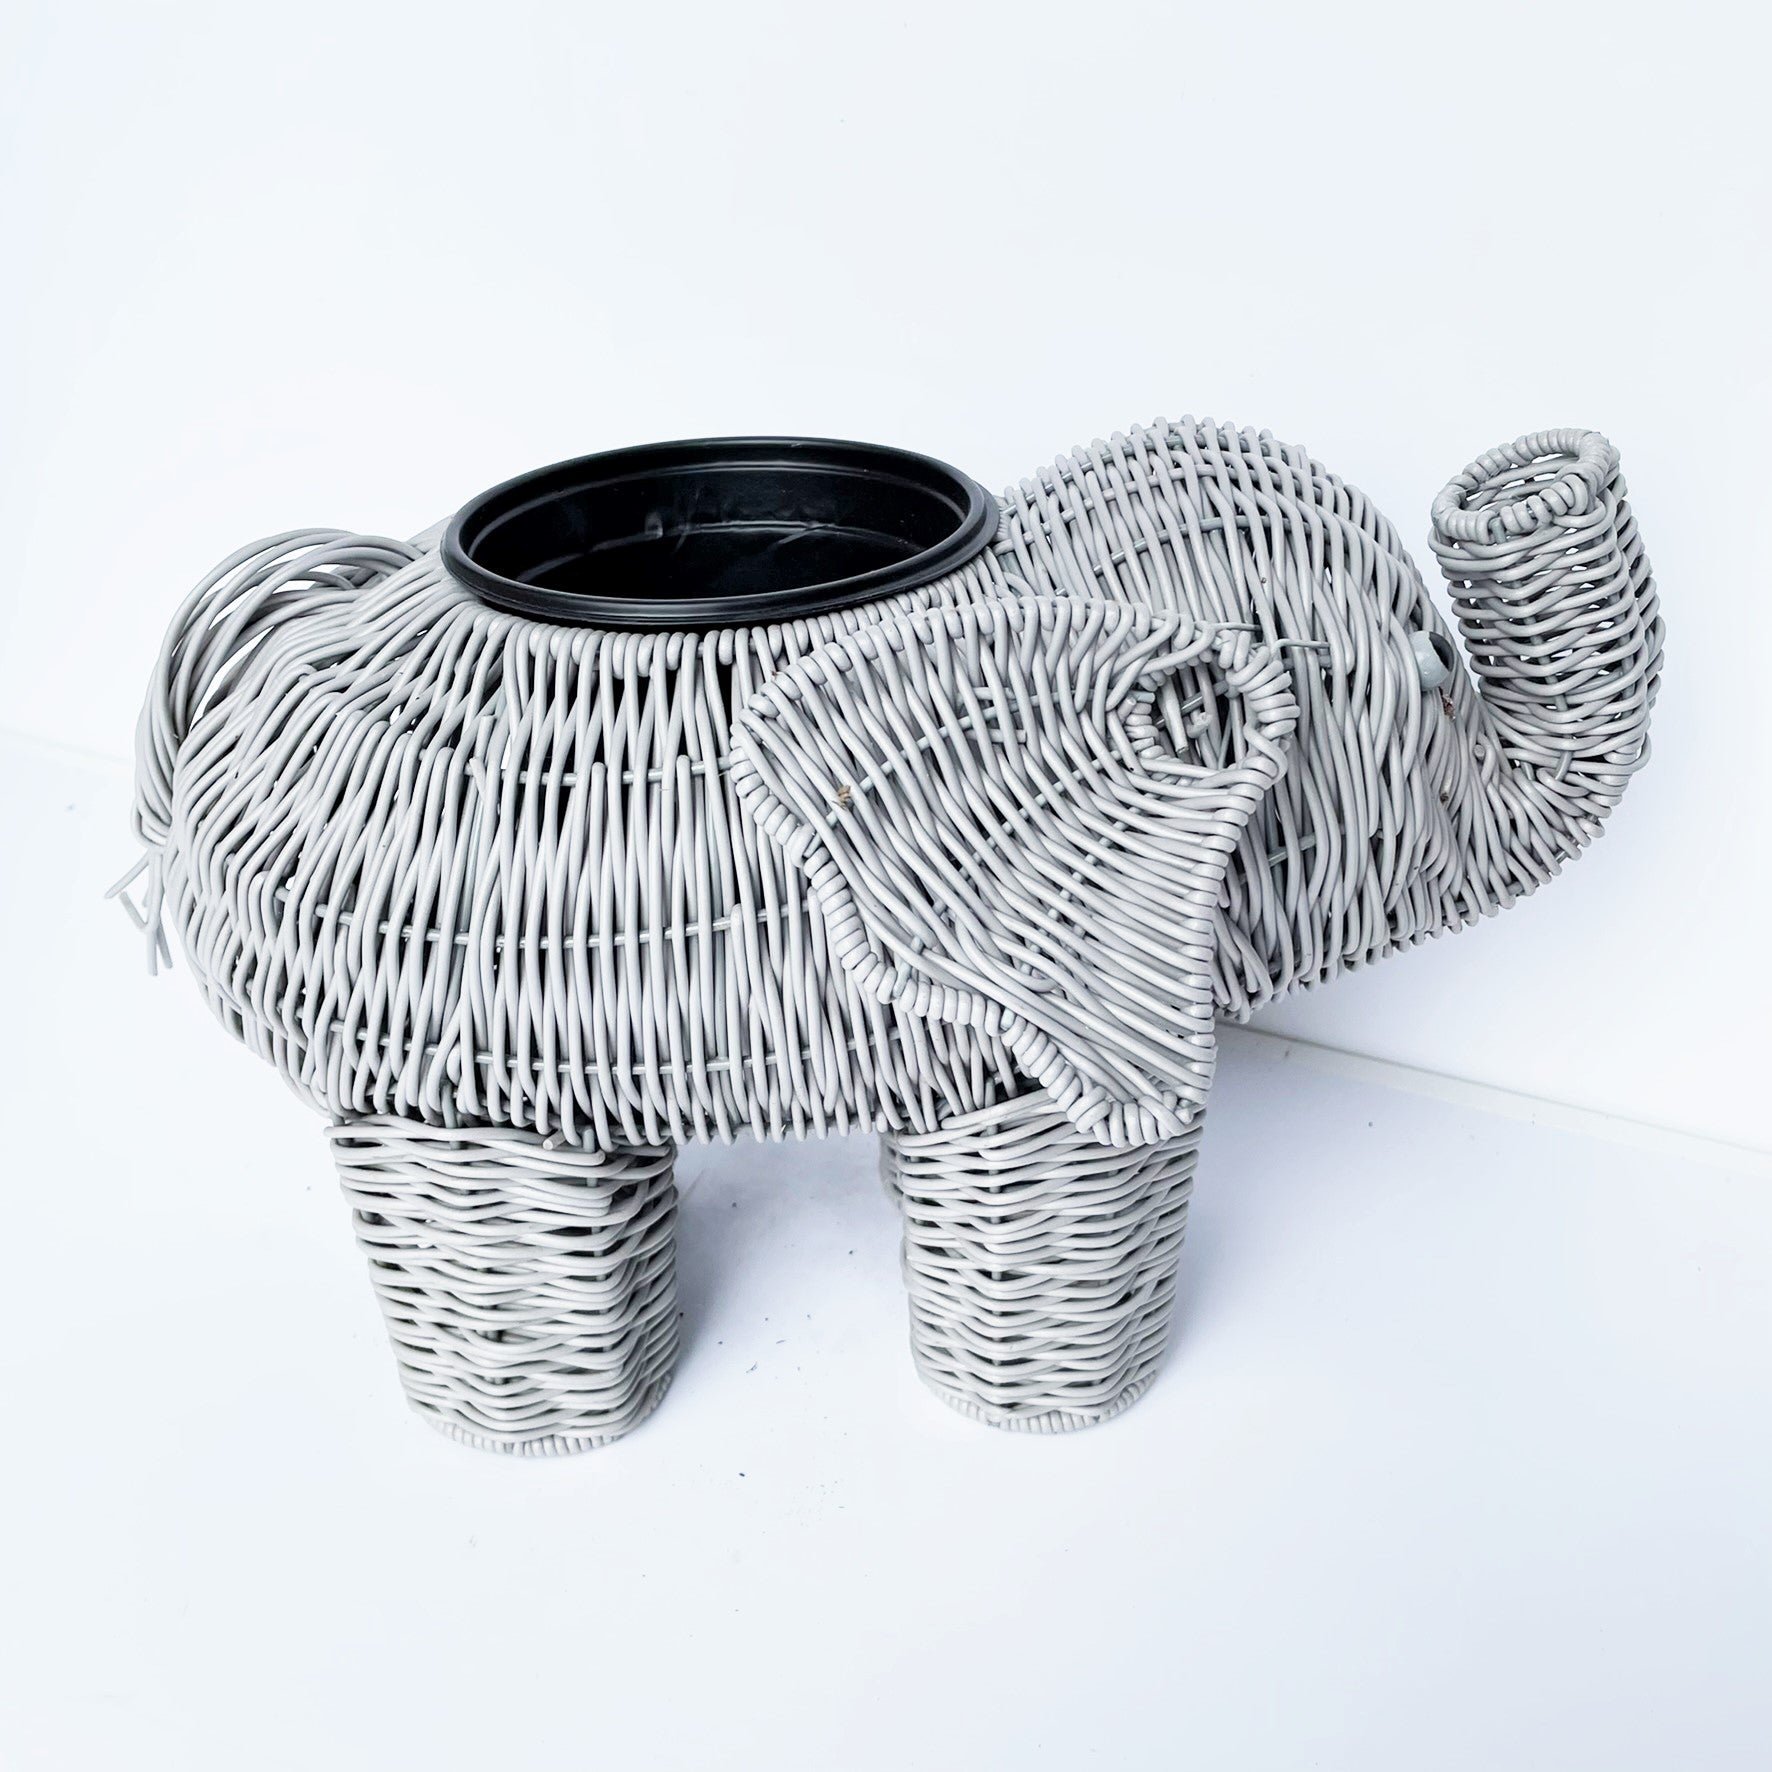 Elephant Basket